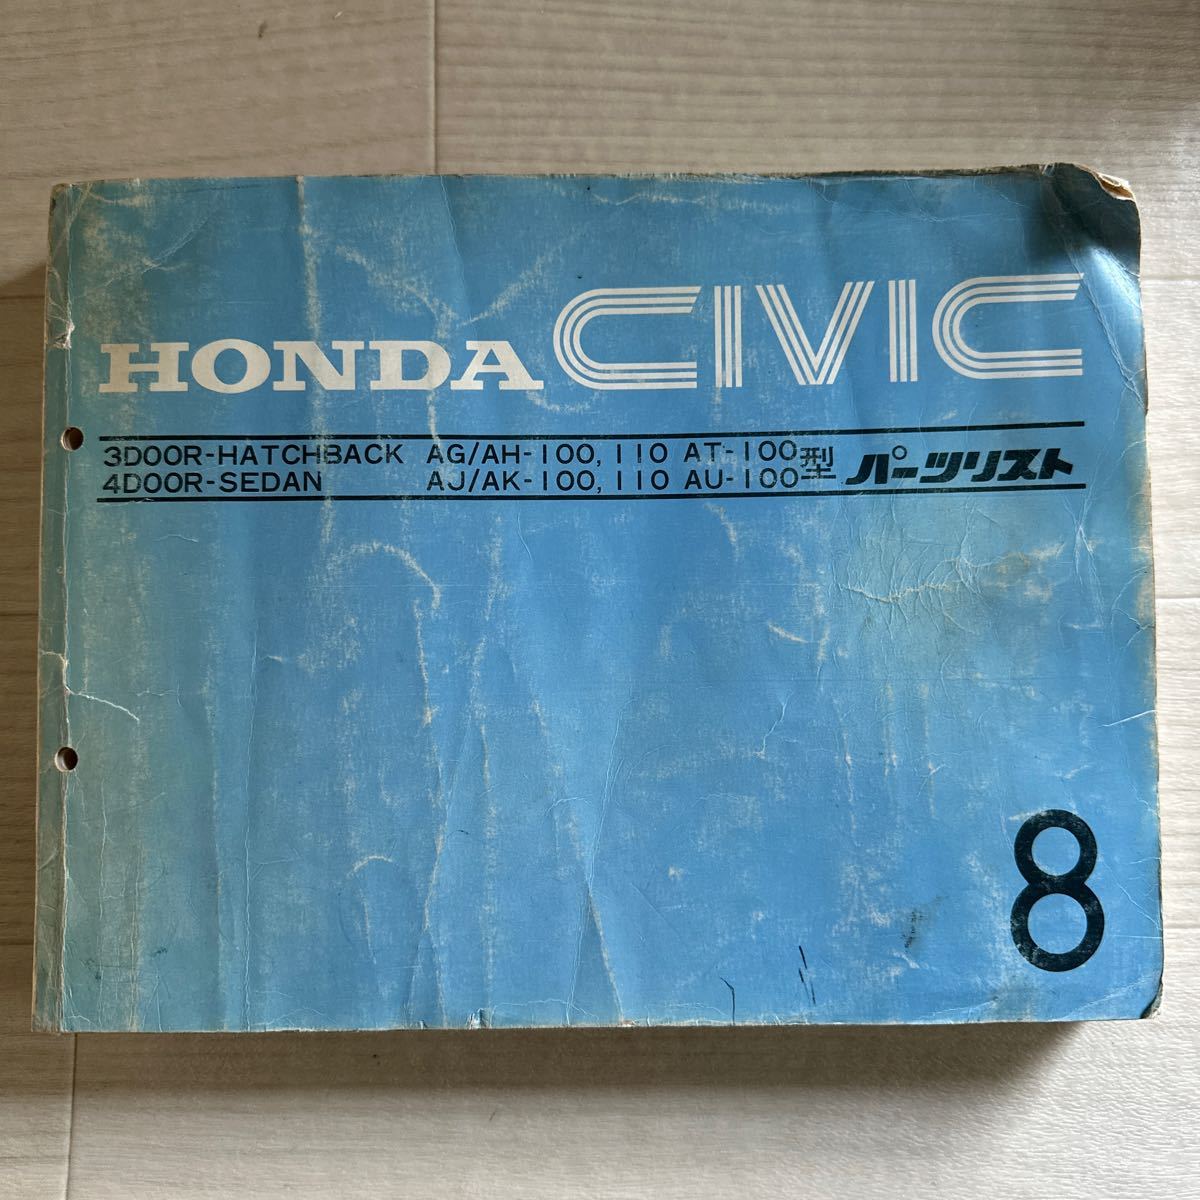 [A0112-7] Honda CIVIC Civic 3 дверь / 4 двери AG/AH/AJ/AK/AT/AU type список запасных частей 8 версия ( каталог запчастей / инструкция / сервисная книжка / книга по ремонту / схема проводки )